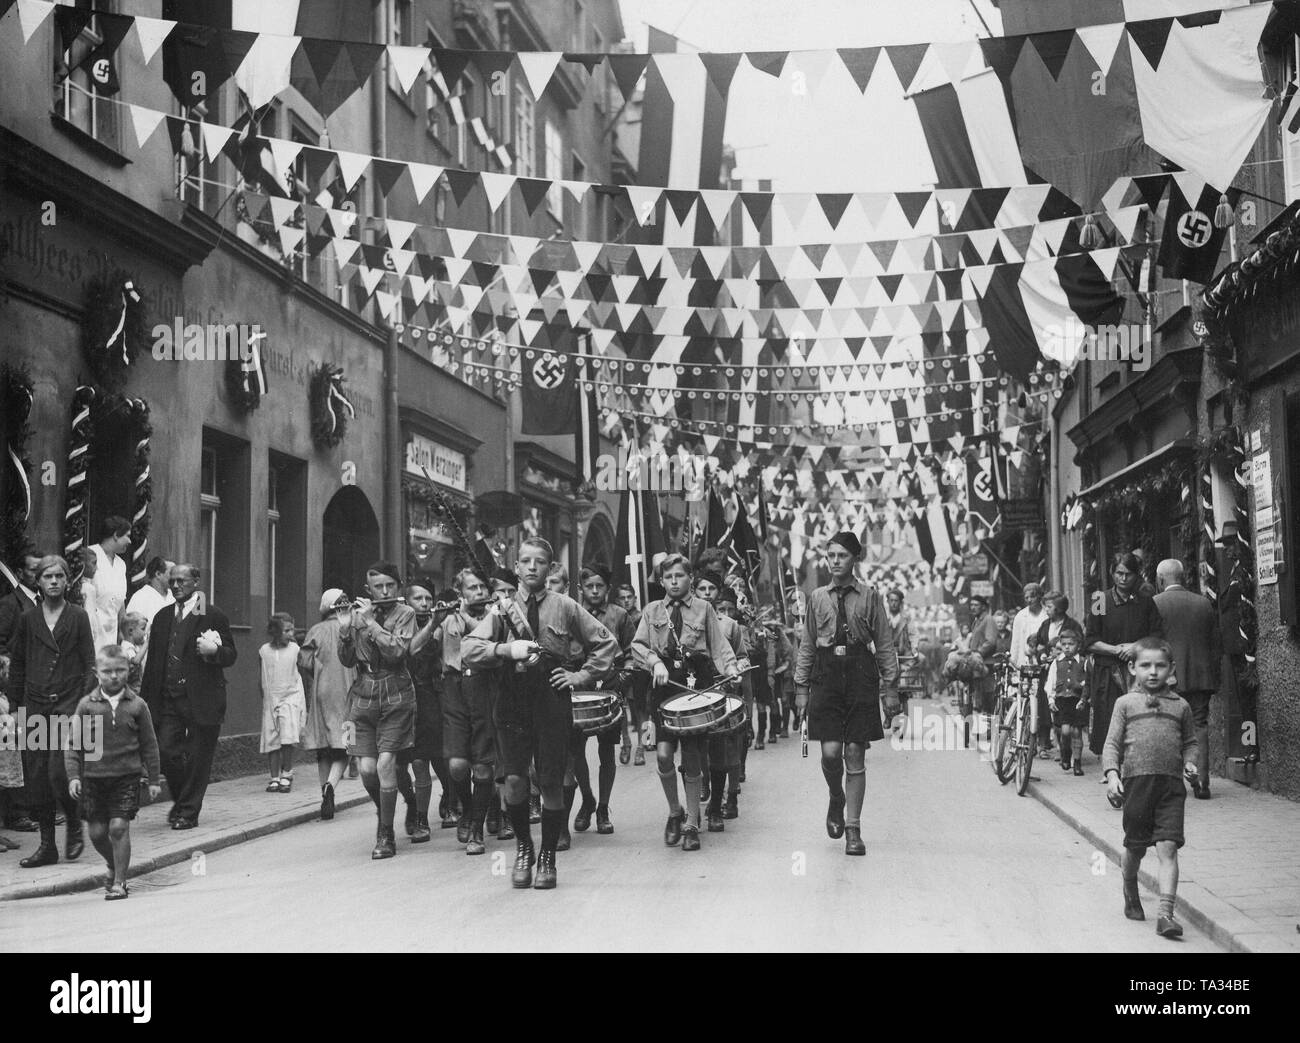 Un groupe de musique de la Jungvolk des marches en avant d'une unité Jungvolk. Fête de la rue est décorée de noir-blanc-rouge fanions et drapeaux à croix gammée à l'occasion du rallye du NSDAP. Banque D'Images